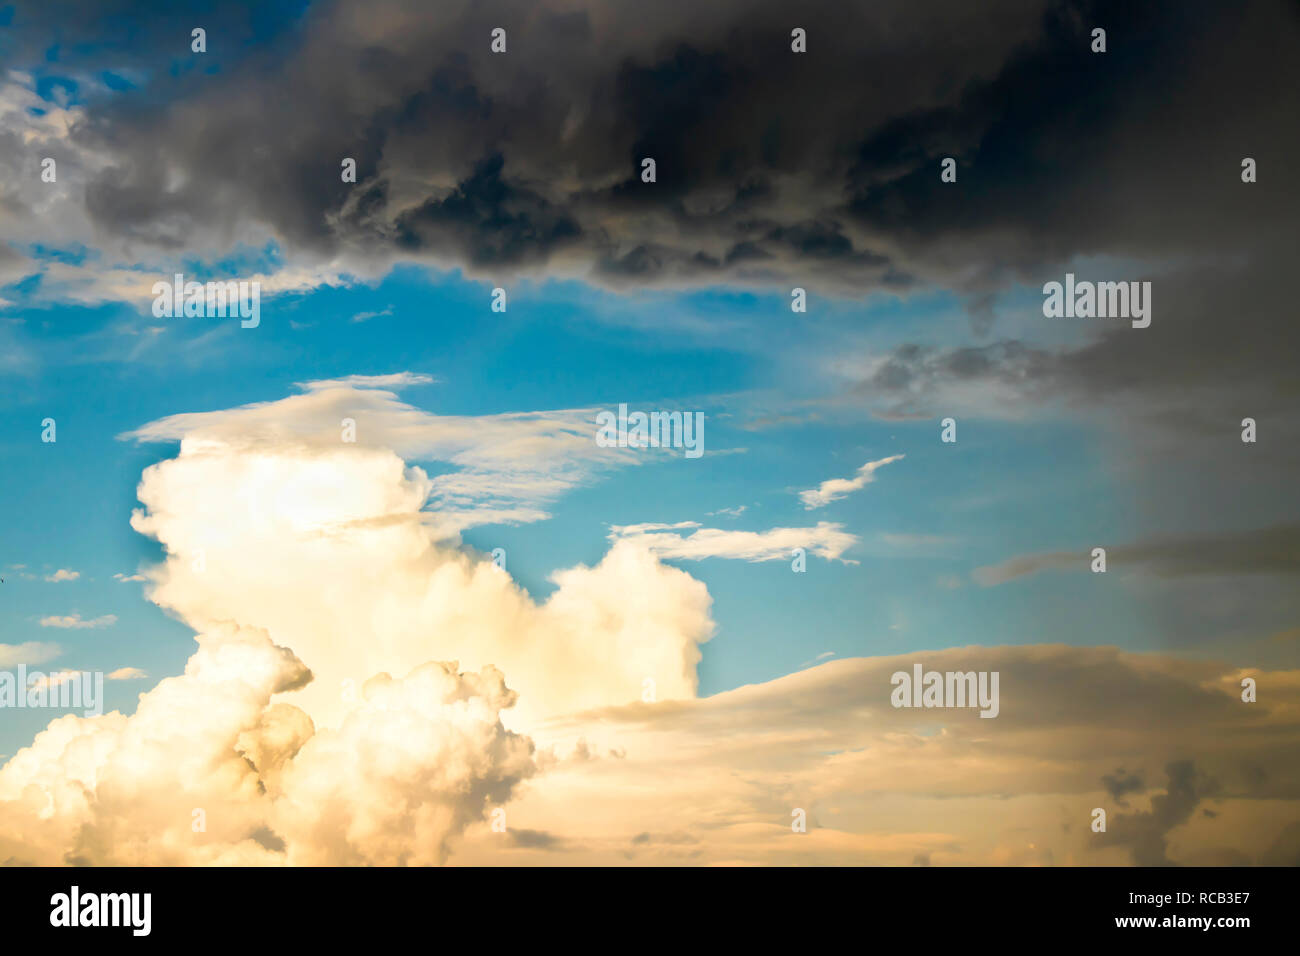 La force de la nature : Dramatique ciel nuageux à l'opposé du soleil lumineux et sombres nuages de pluie Afficher météo rapide changement au cours du vent fort en été Banque D'Images